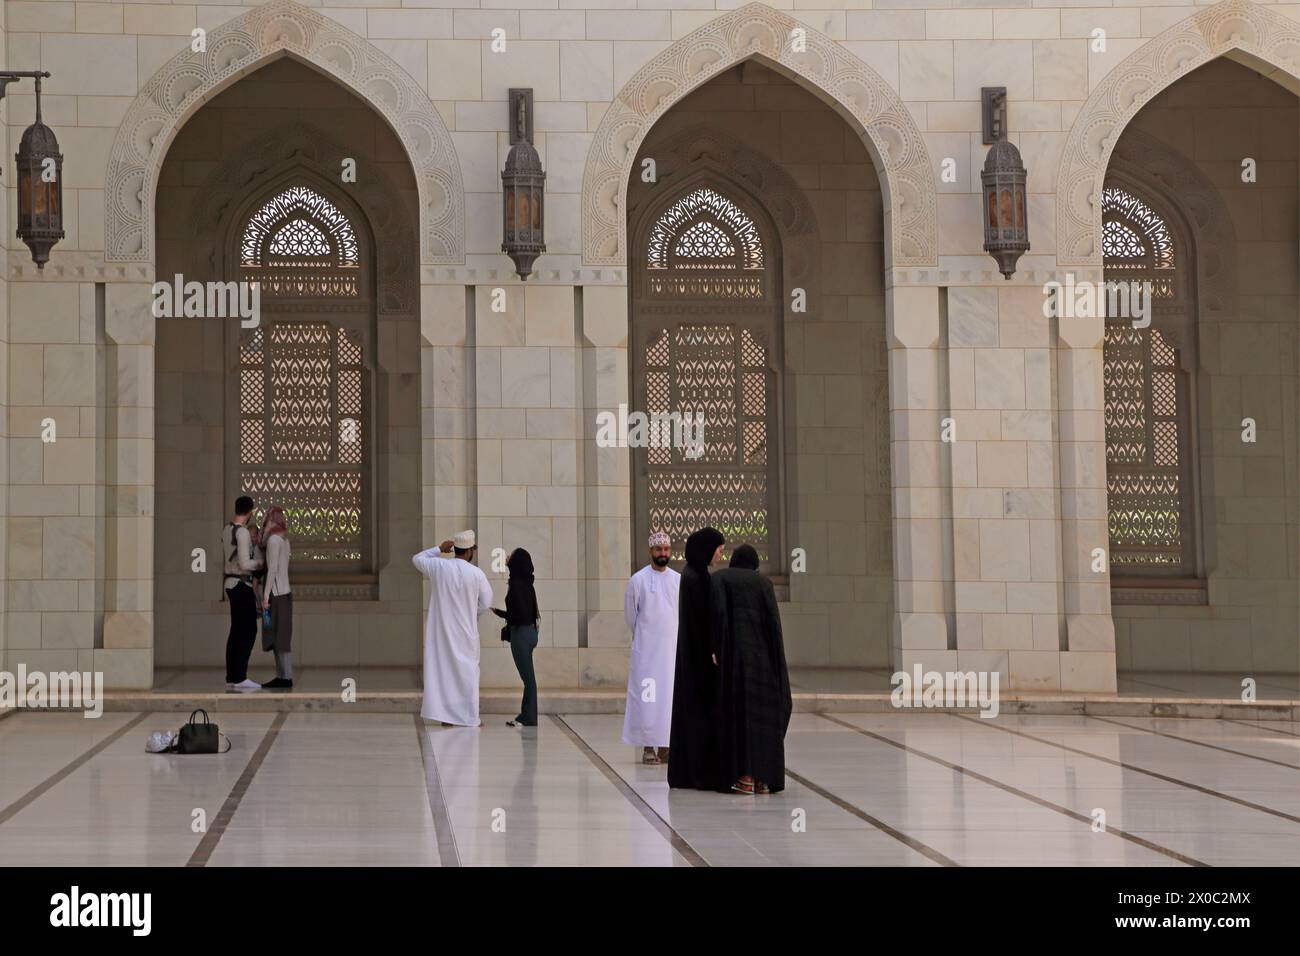 Sultan Qaboos Grand Mosquée visiteurs en robe occidentale et traditionnelle dans la cour (Sahn) Muscat Oman Banque D'Images